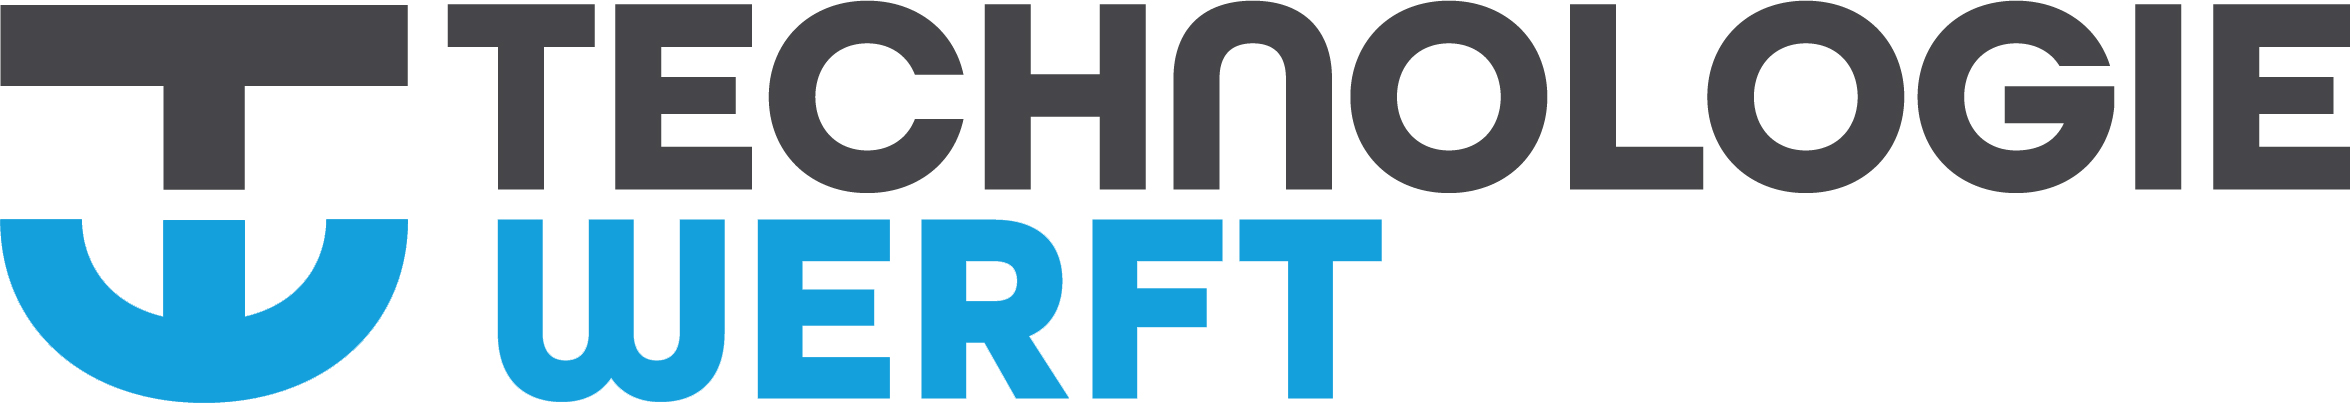 Technologiewerft Logo